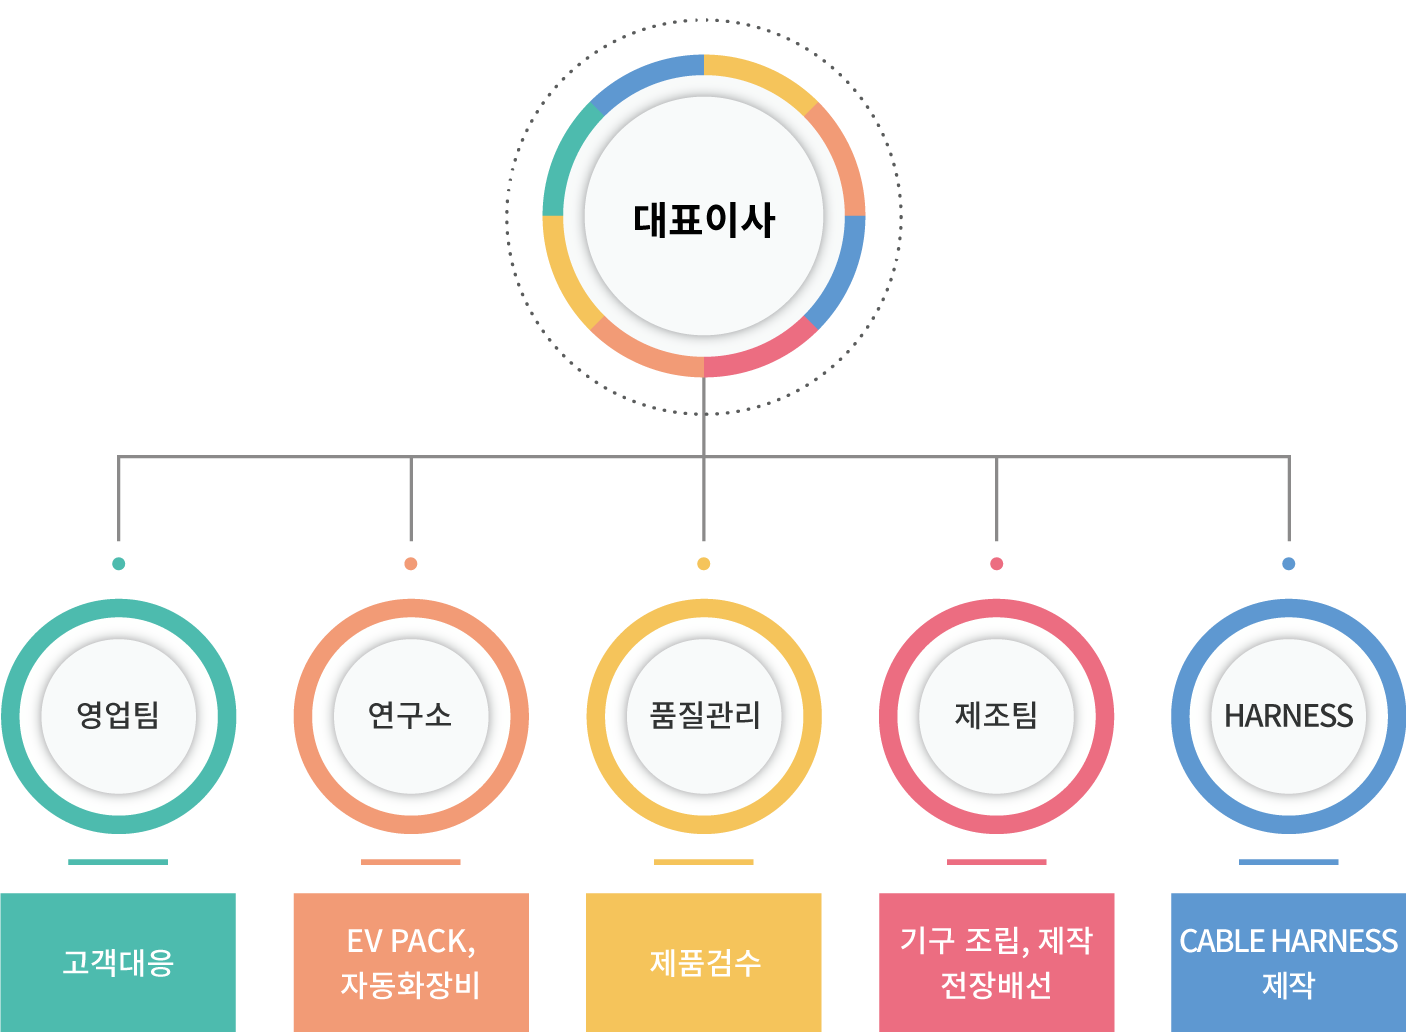 Organization_Chart